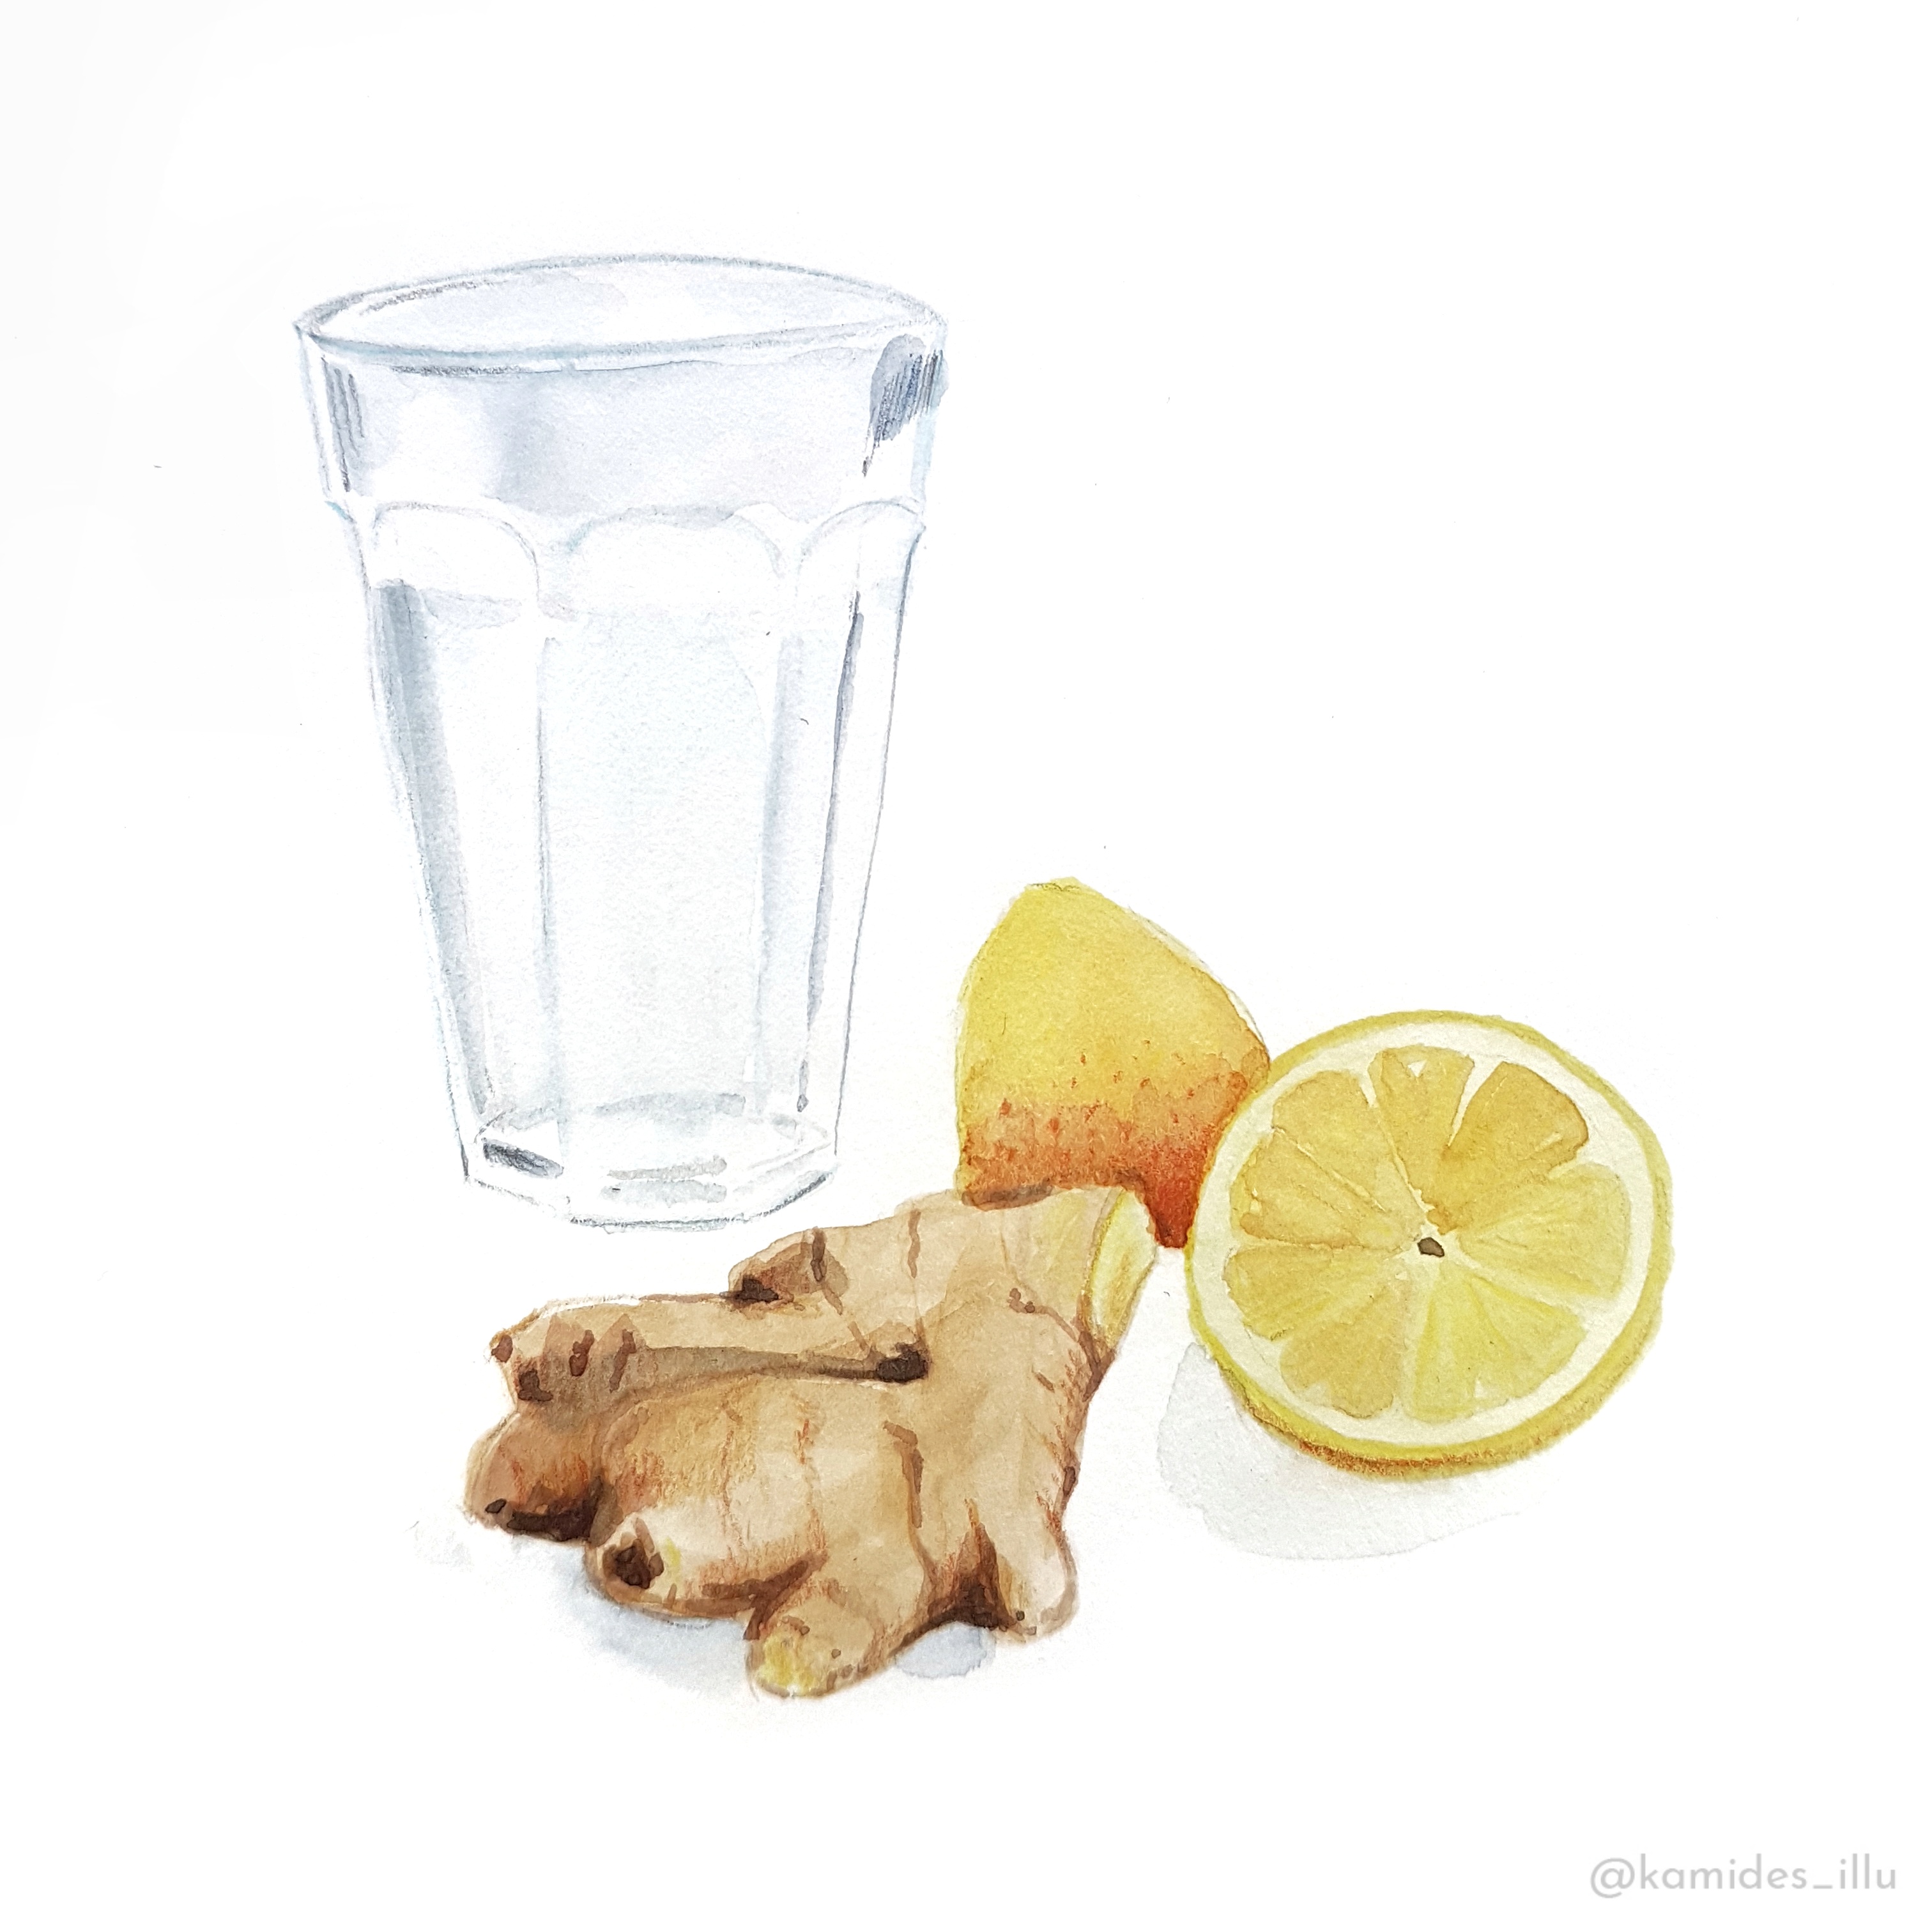 Ginger lemon illustration